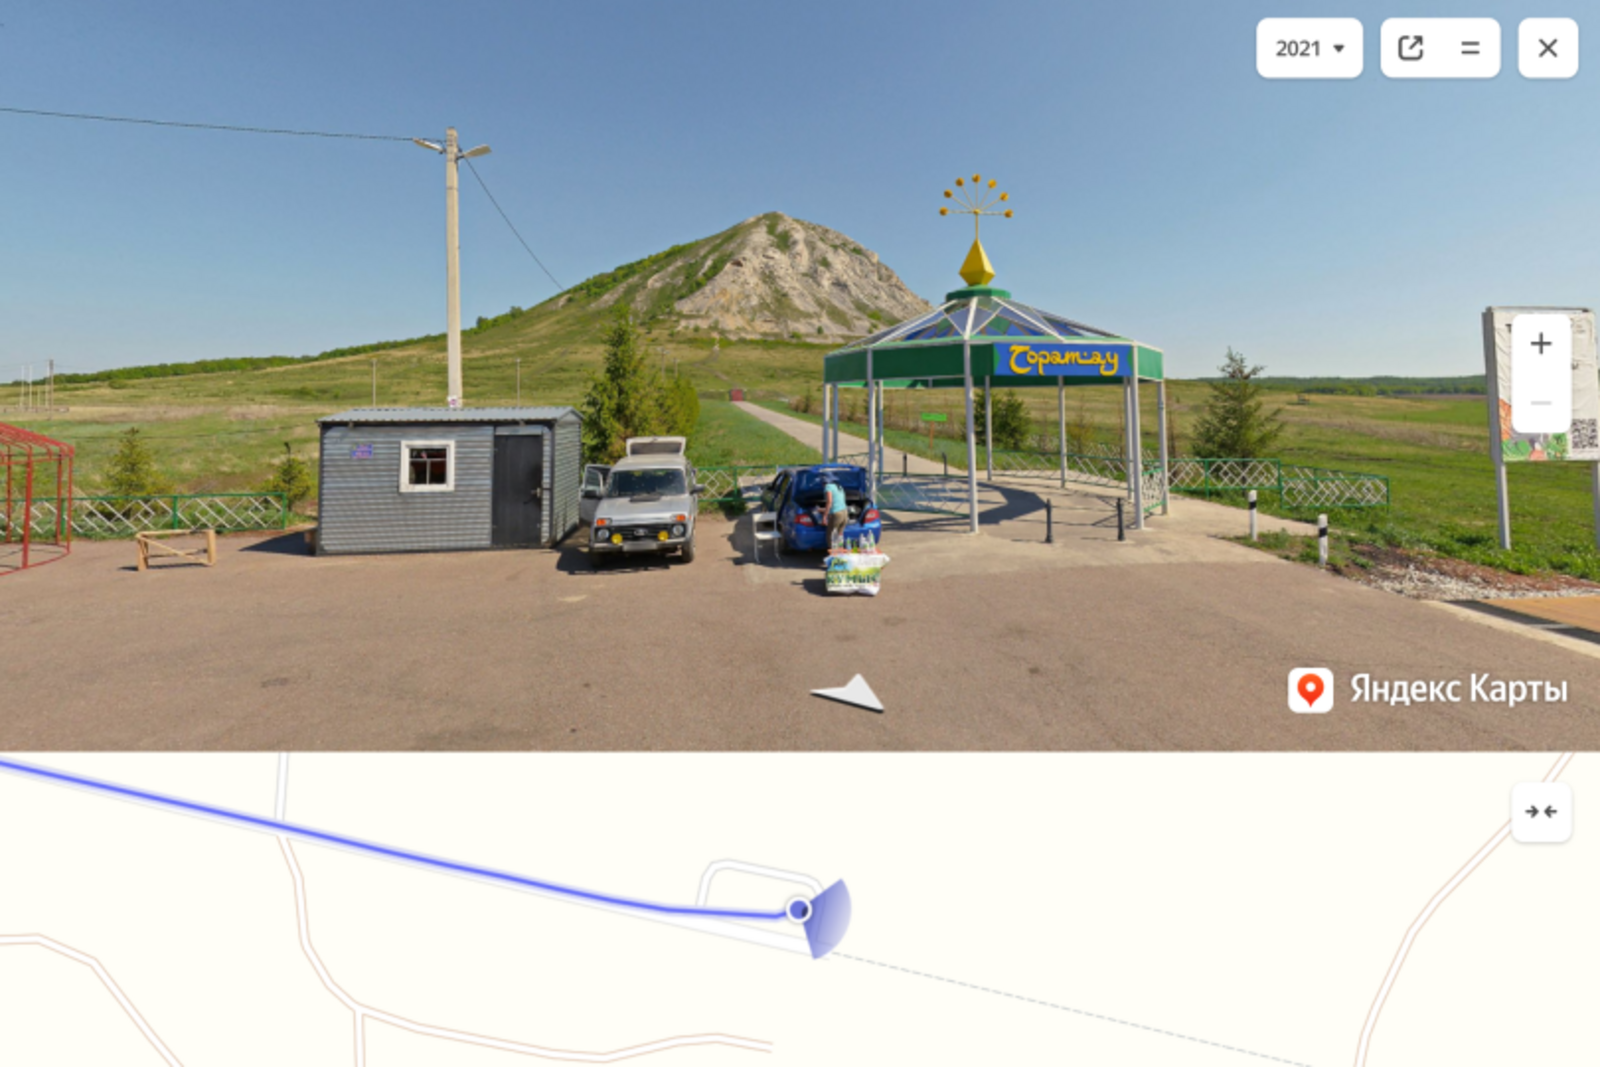 На Яндекс.Картах есть новые города Башкирии в виде панорам